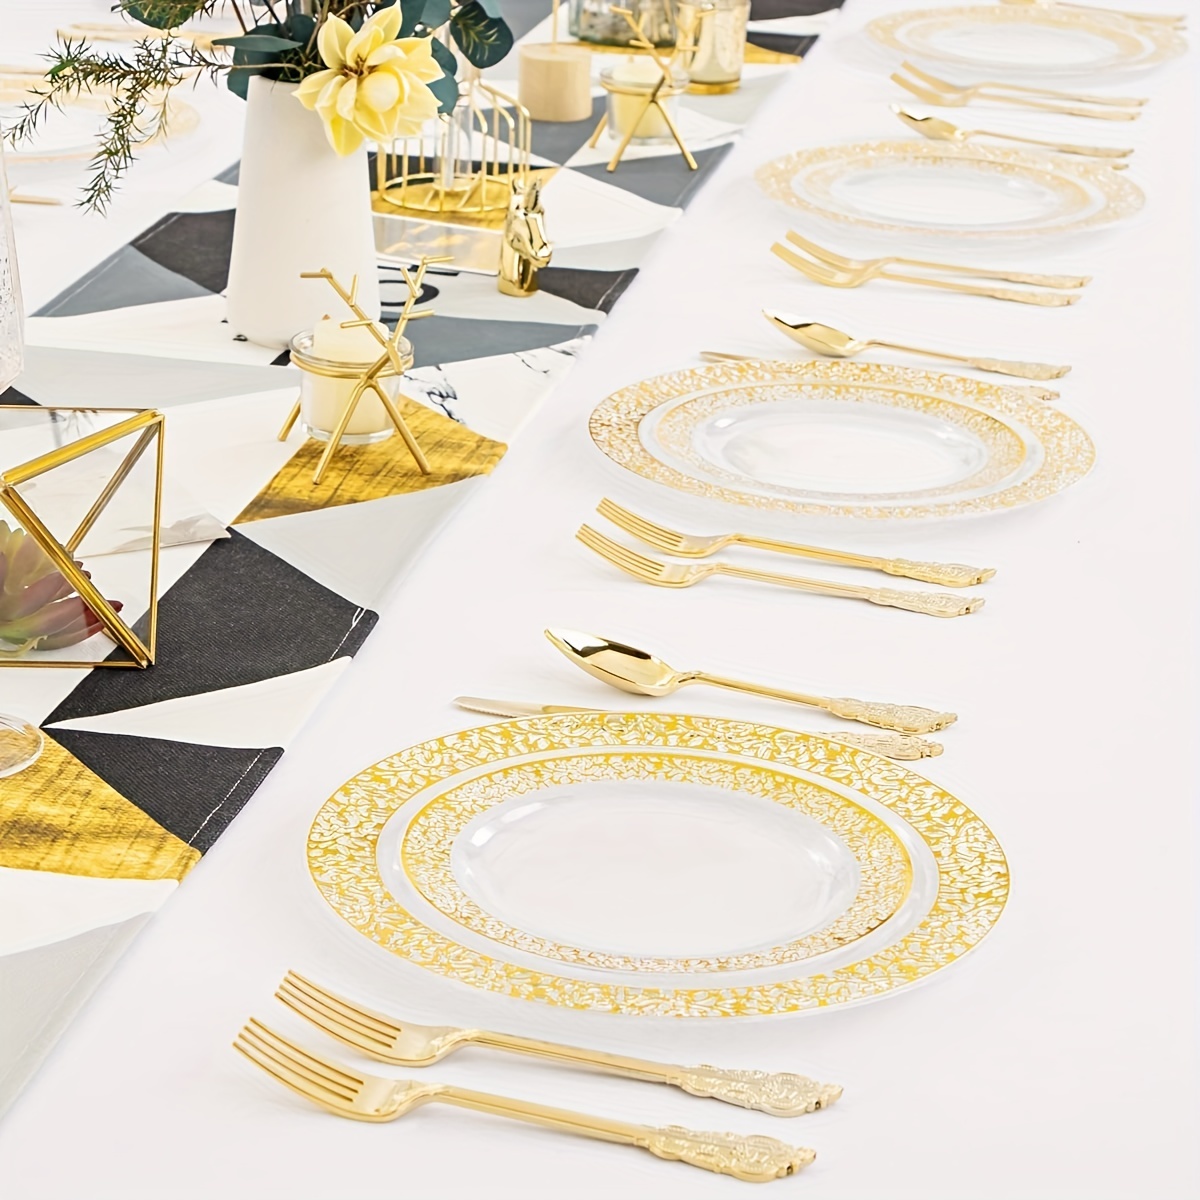 OliviasProject — Platos de papel mint con borde dorado